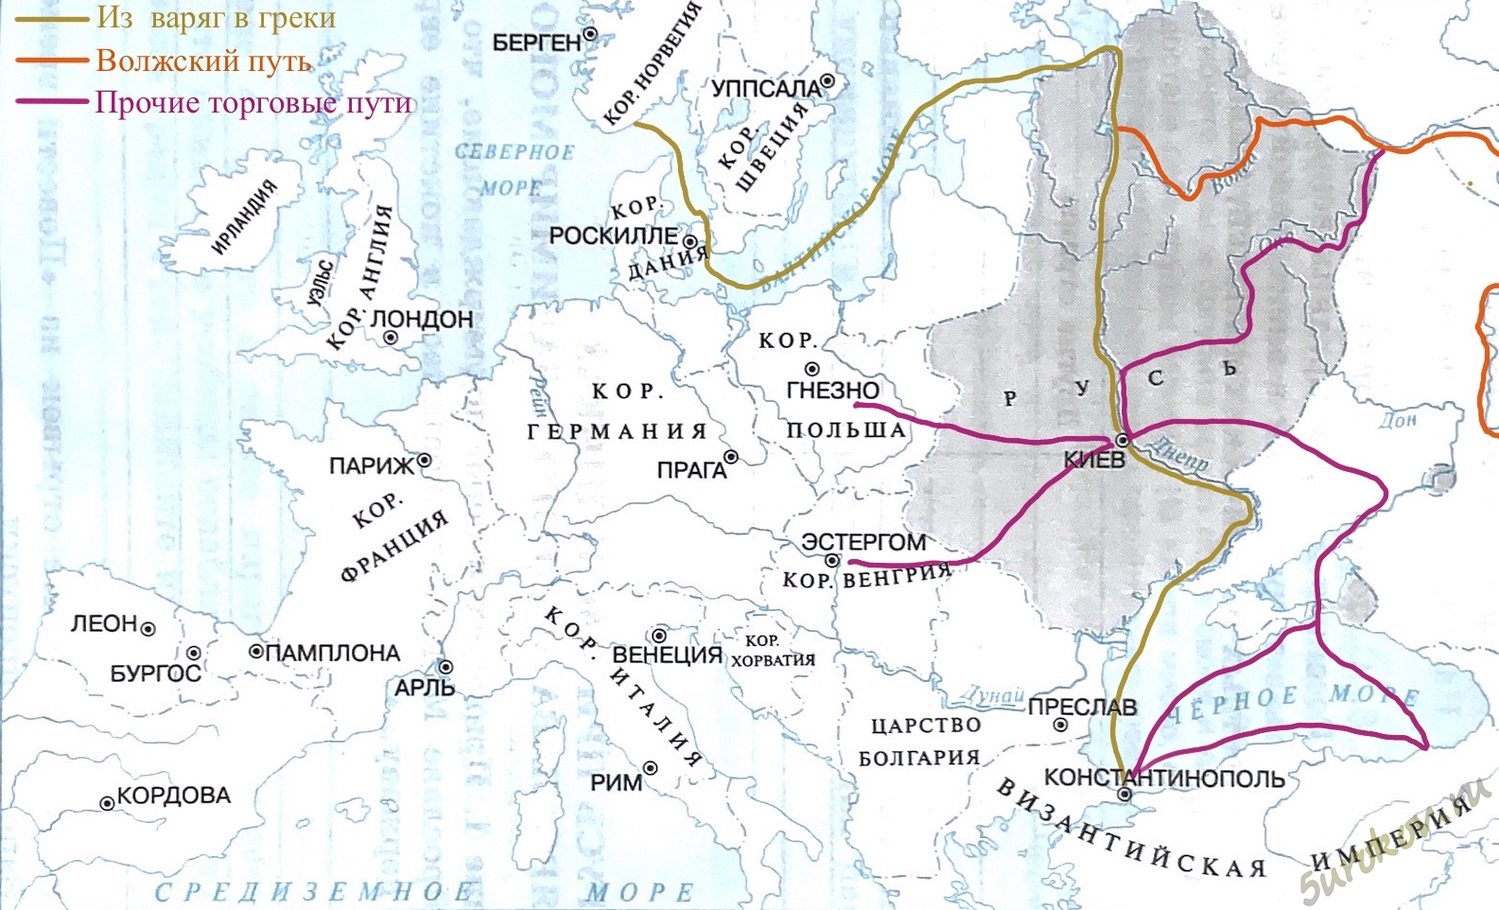 Торговый путь из Варяг в греки на карте древней Руси